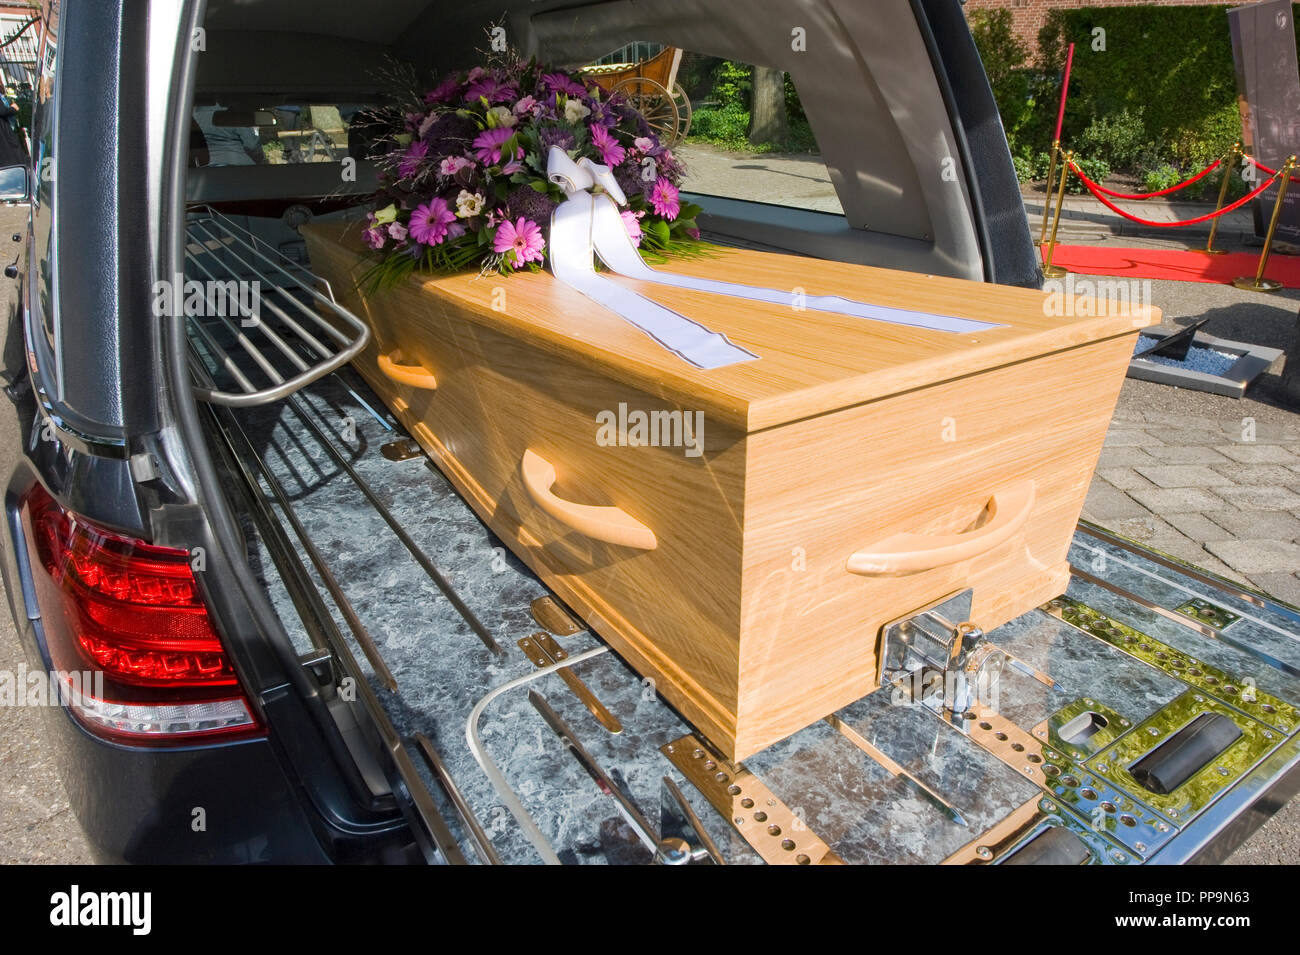 Una bara con un omaggio floreale in un funerale auto Foto Stock